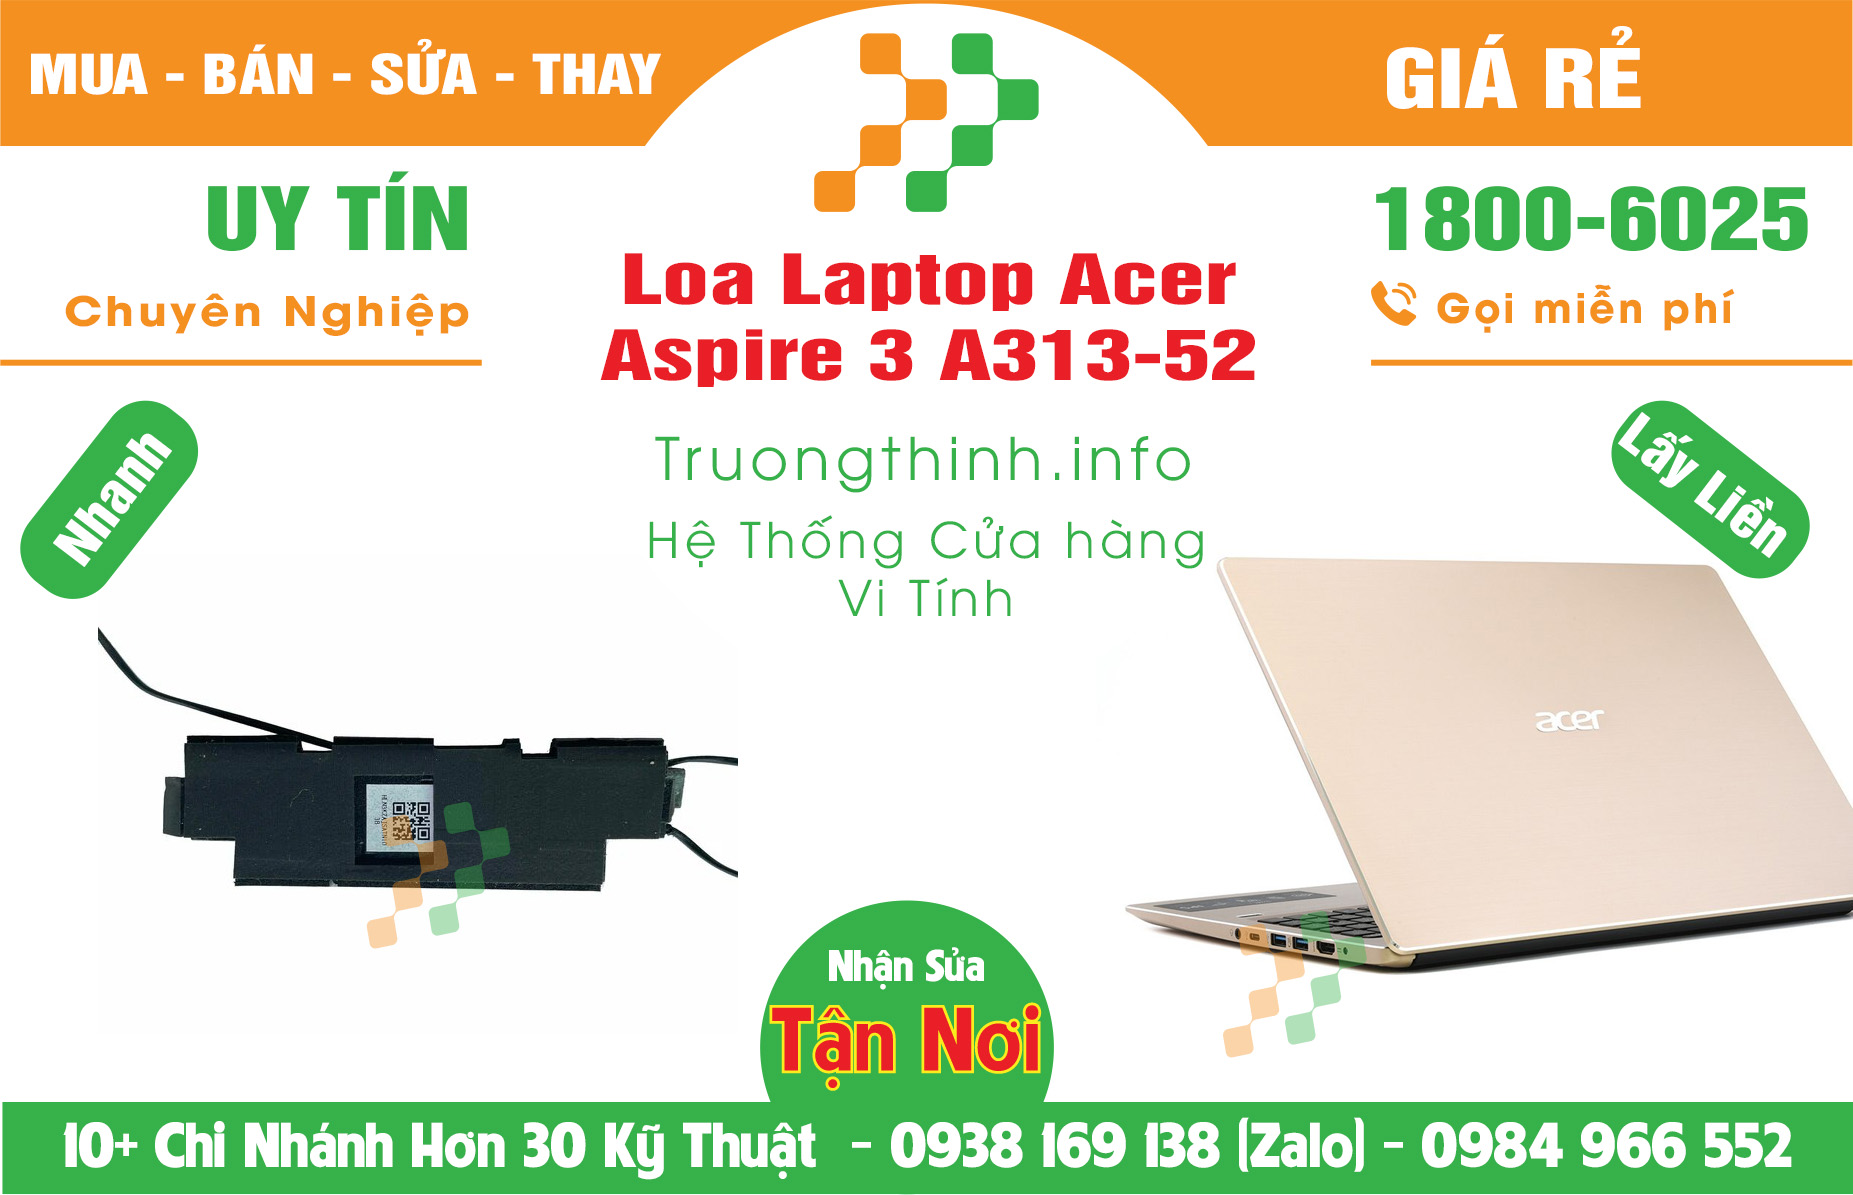 Mua Bán Loa Laptop Acer Aspire 3 A313-52 Giá Rẻ | Máy Tính Trường Thịnh Giá Rẻ